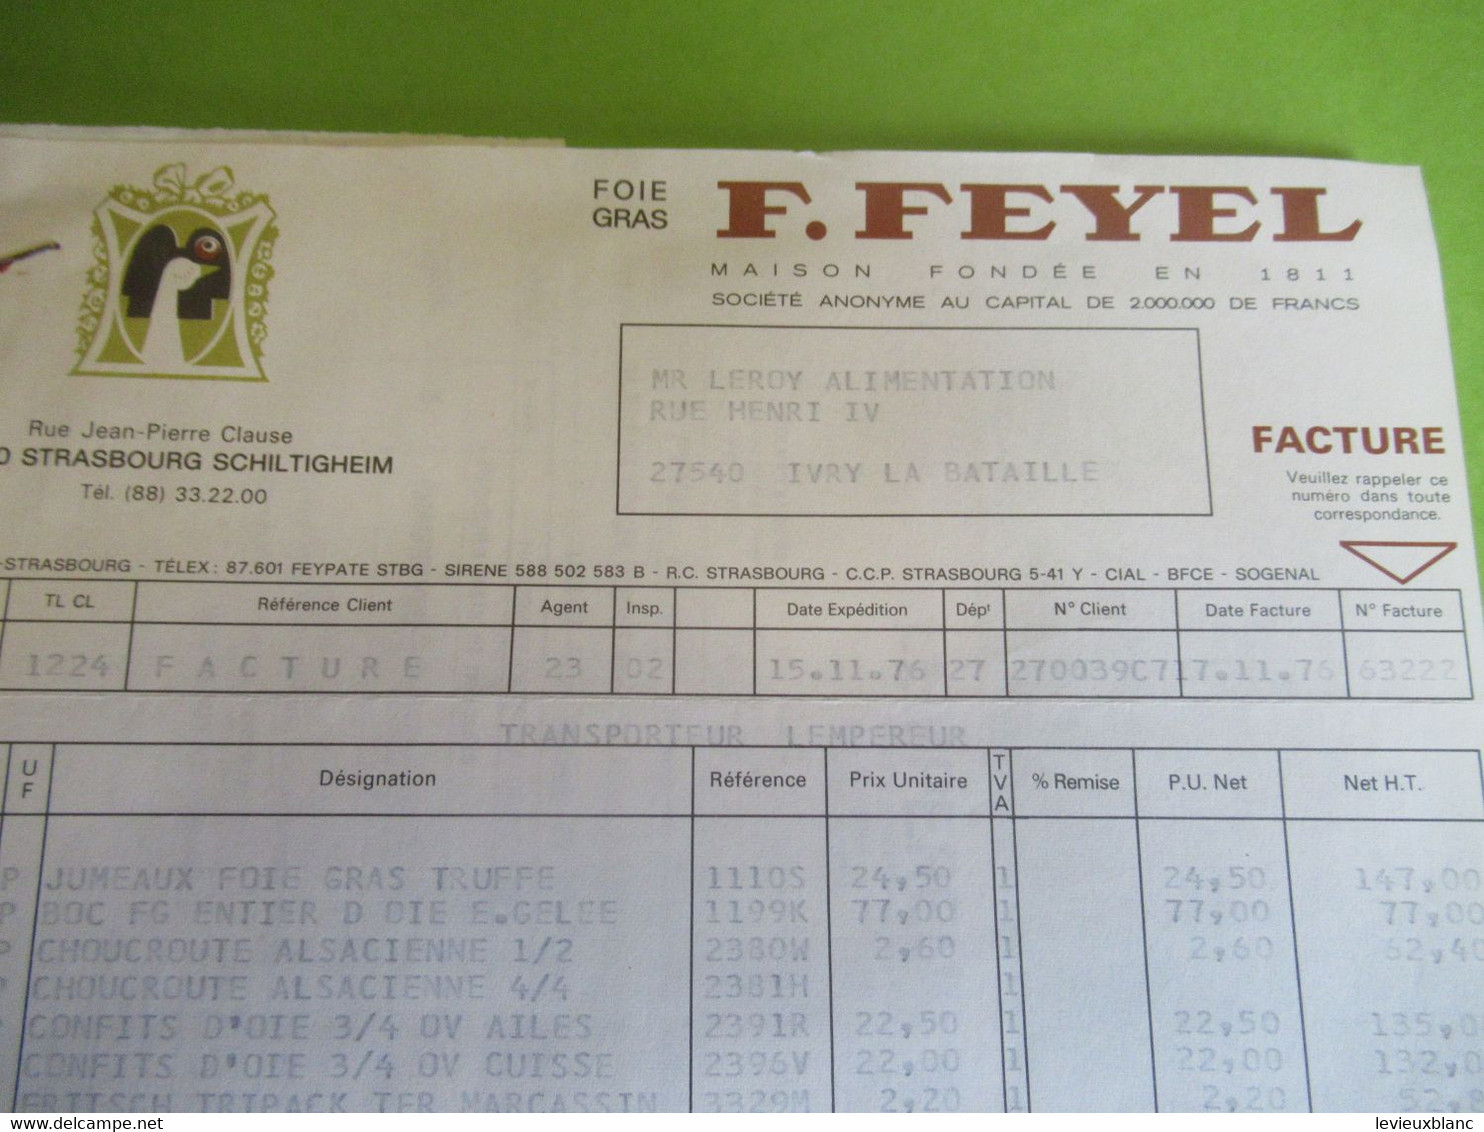 Foies Gras/Facture + Livraison + Lettre De Change / F FEYEL/ STRASBOURG-SCHILTIGHEIM/Leroy Ivry 27/ 1976 FACT397 - Food